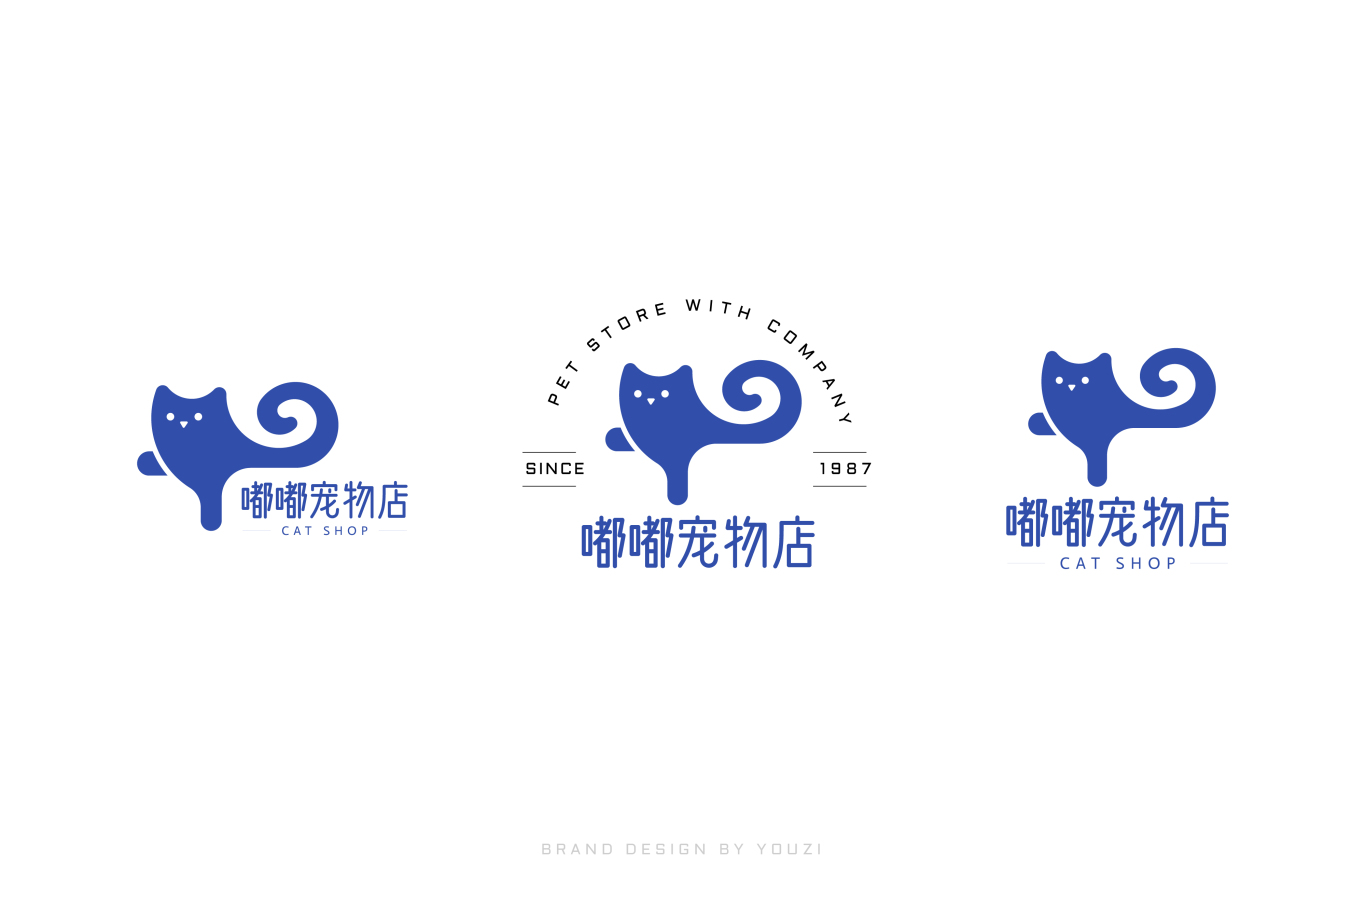 嘟嘟寵物店 logo 設計圖1